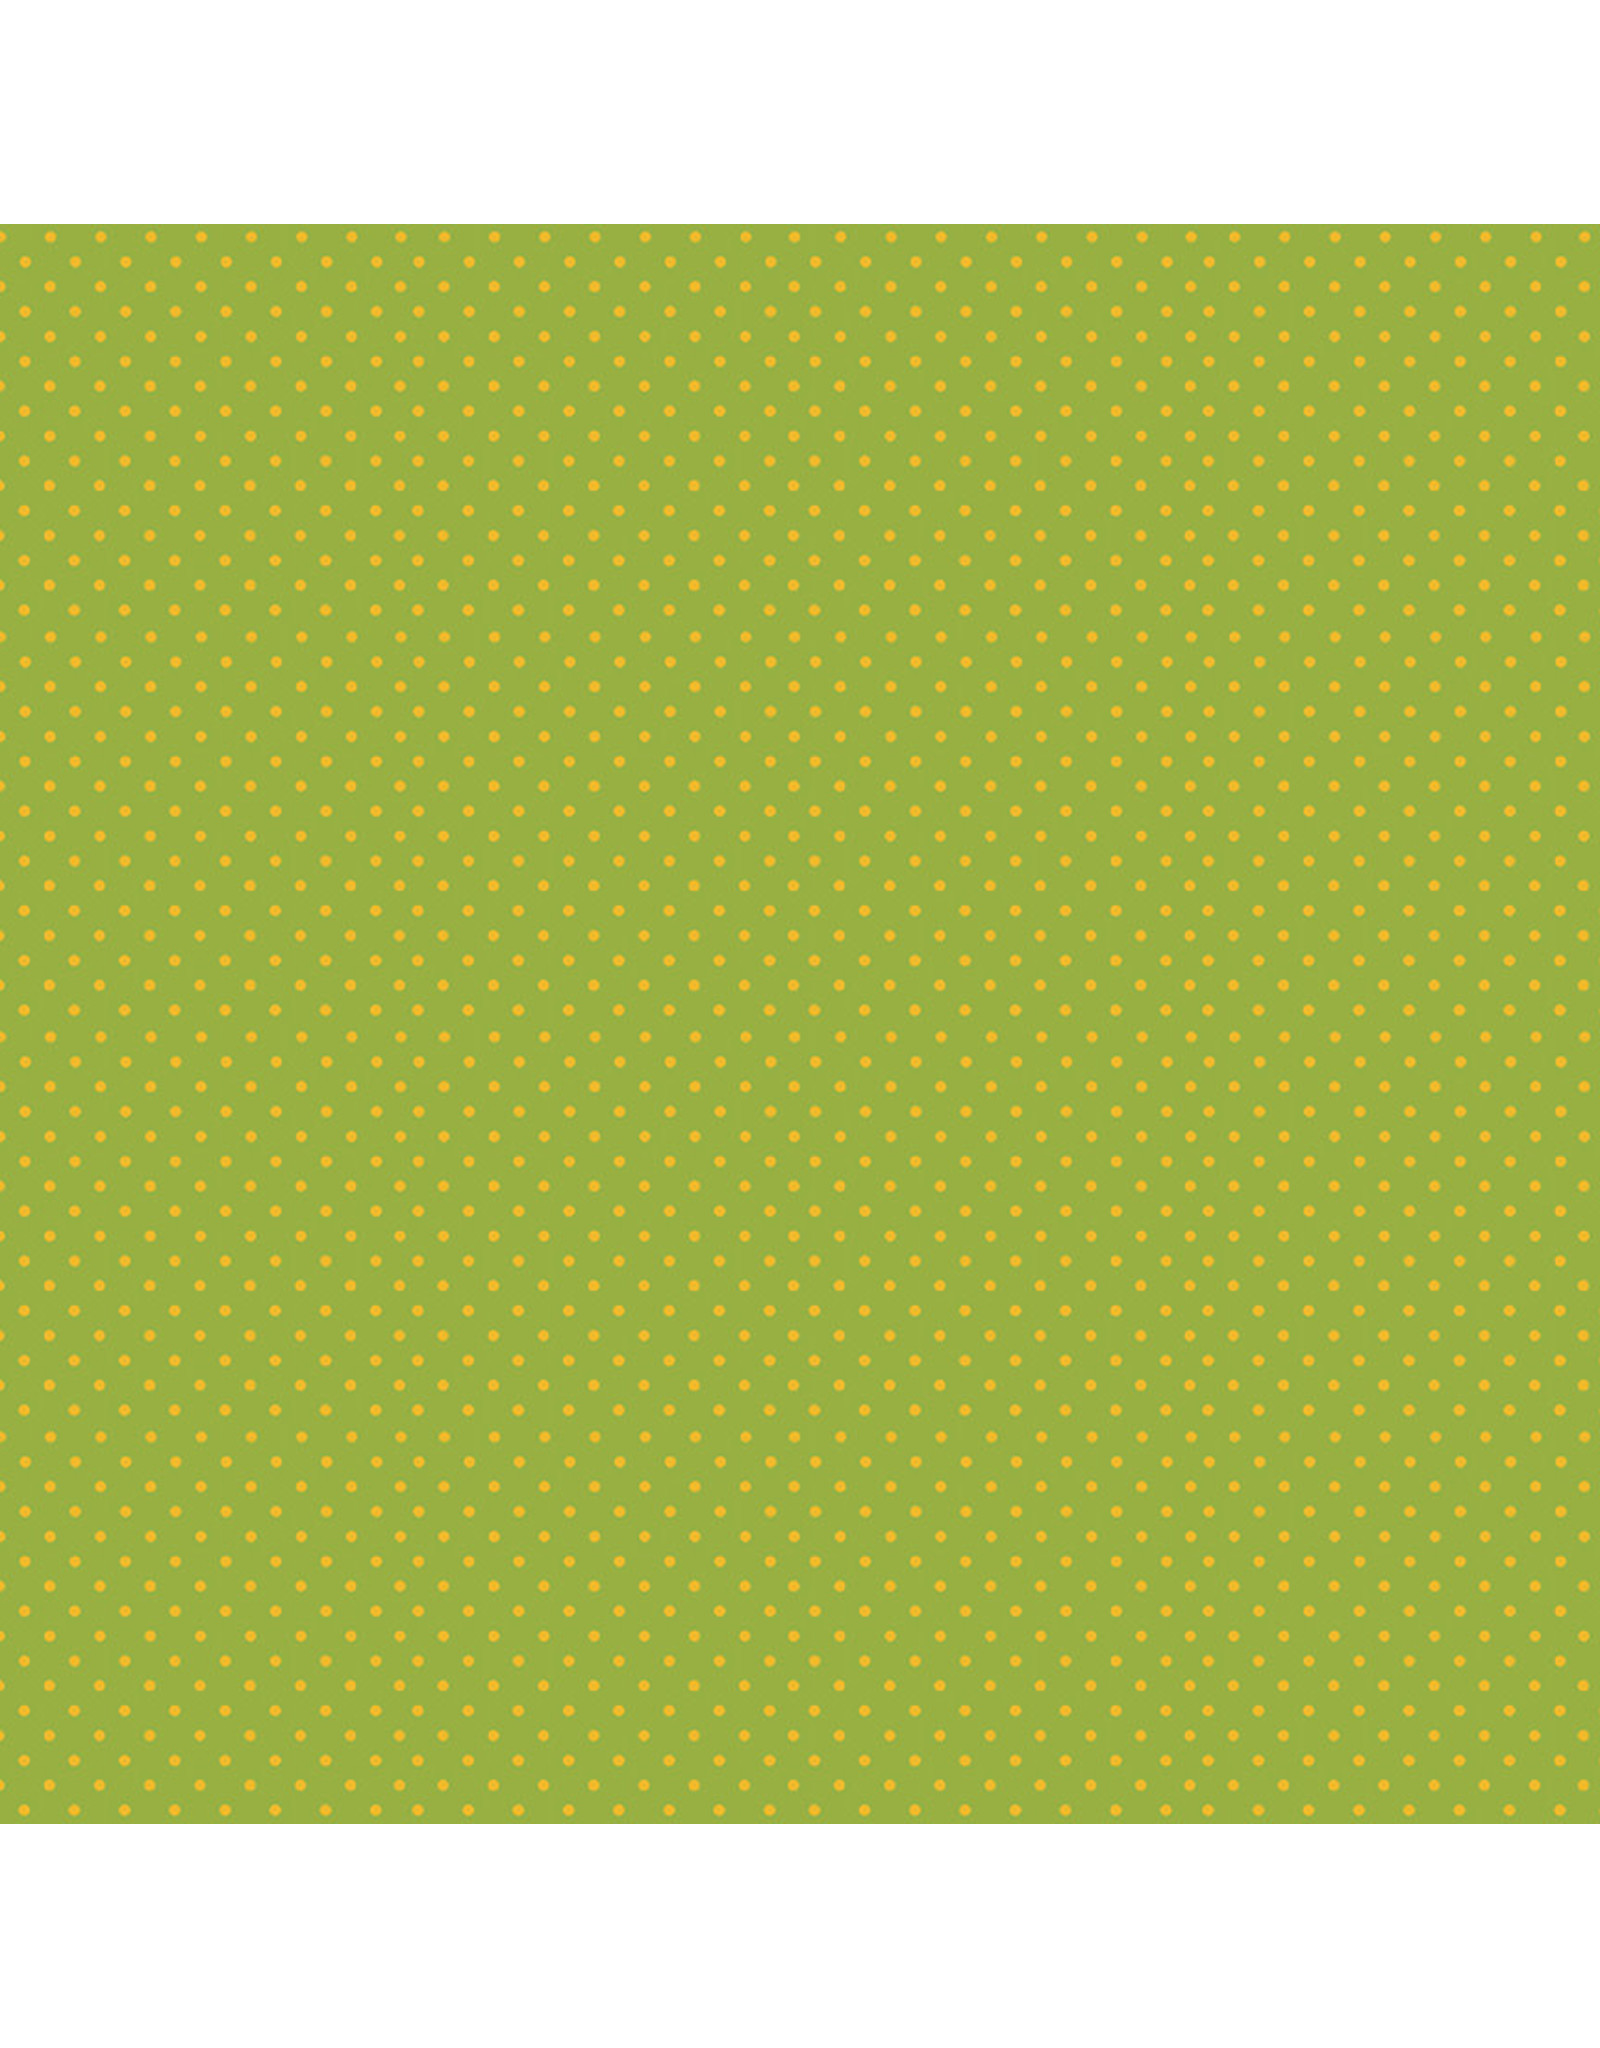 Makower UK Makower UK - Yellow Spot on Green - 830-GY